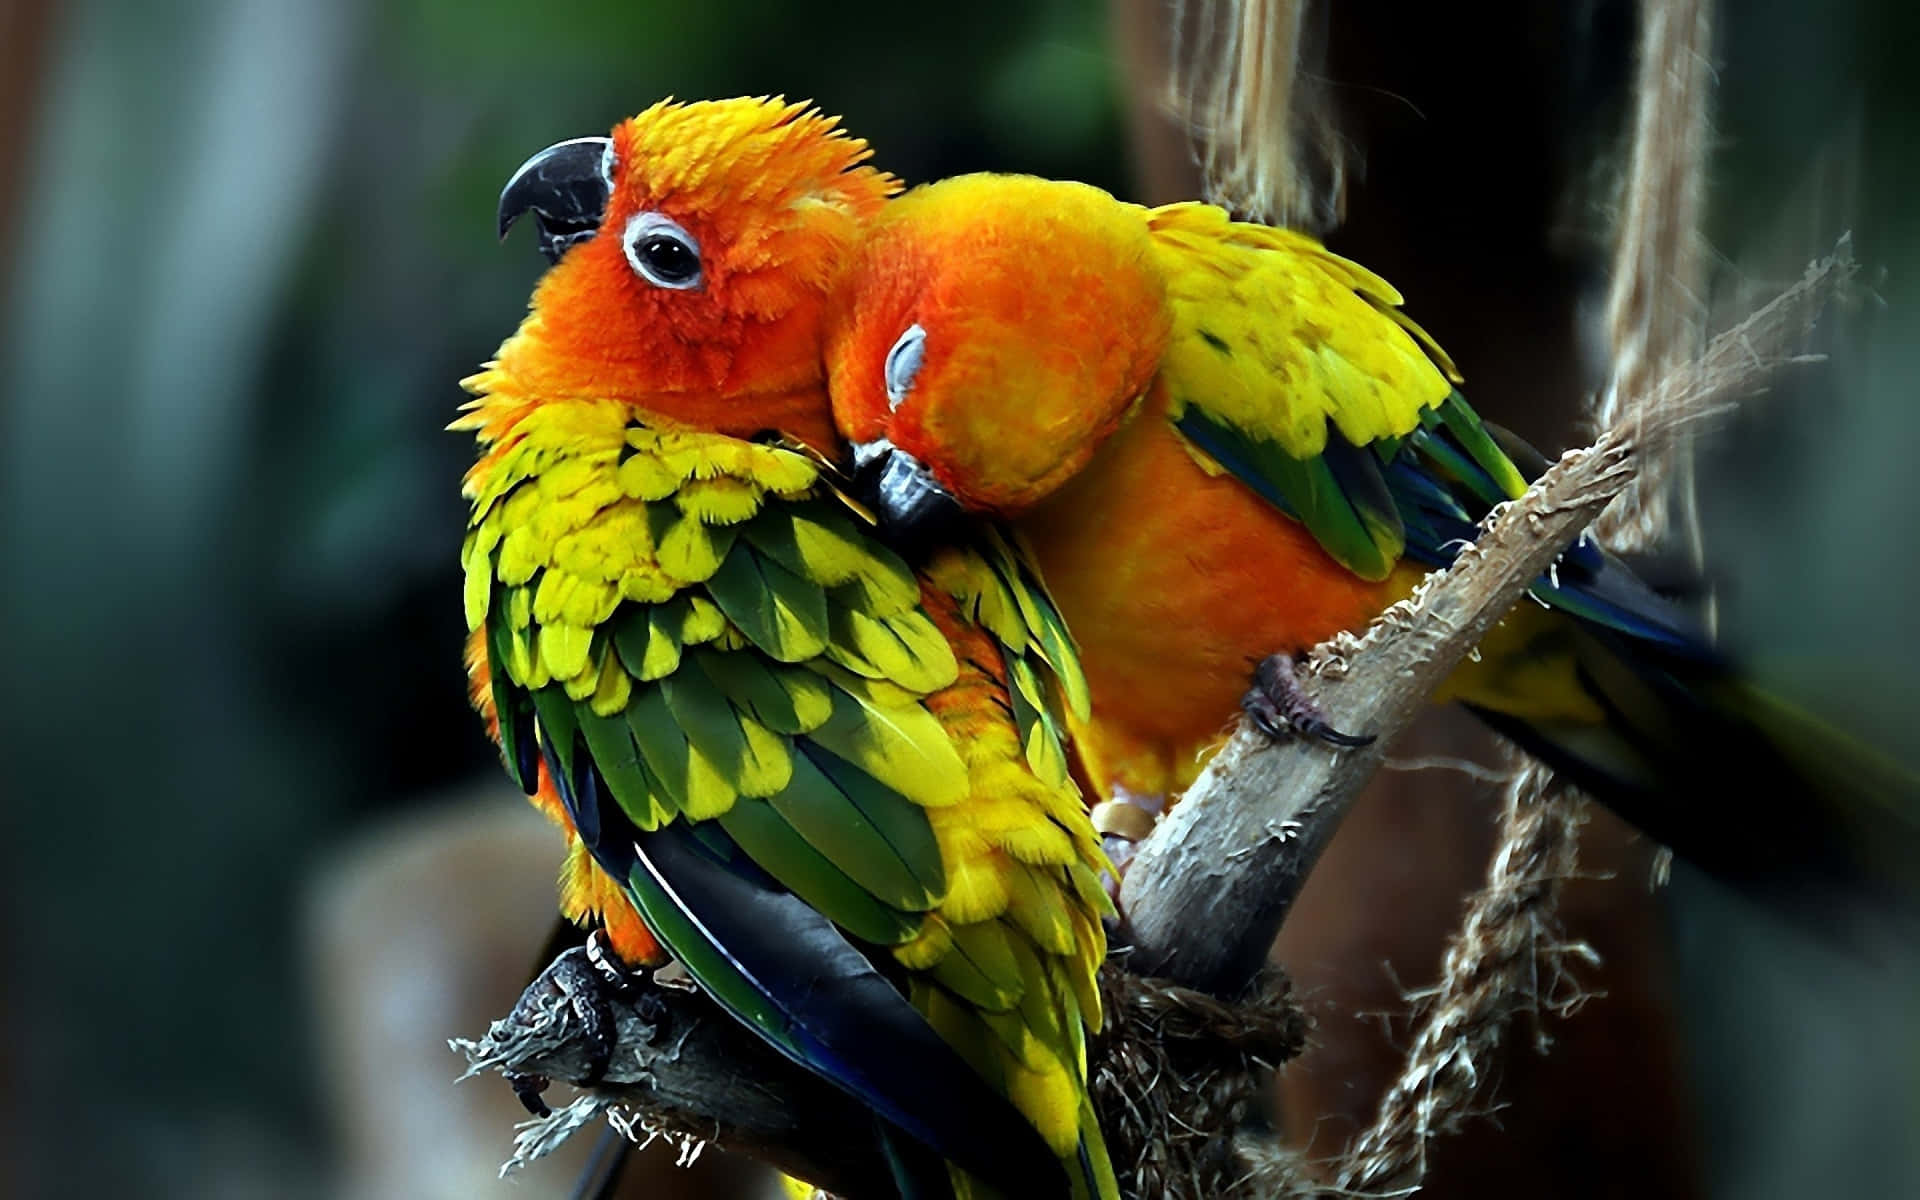 Unbel Simbolo D'amore, Rappresentato Da Questi Due Uccelli Innamorati!